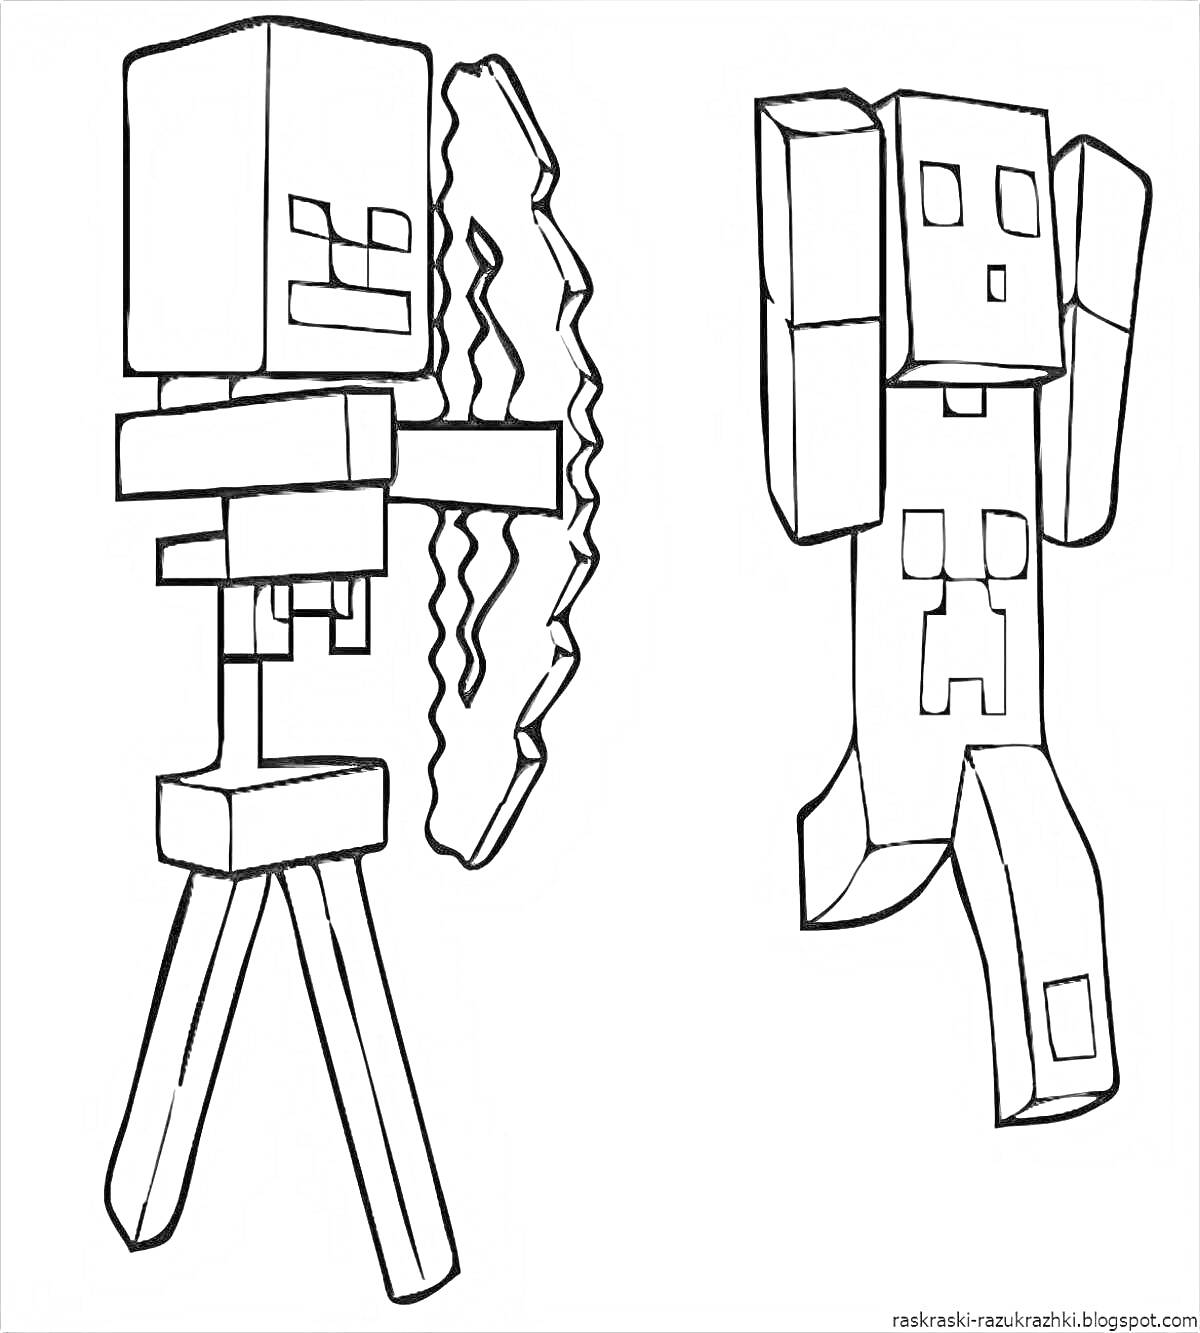 Раскраска Эндермен и скелет с луком из игры Minecraft